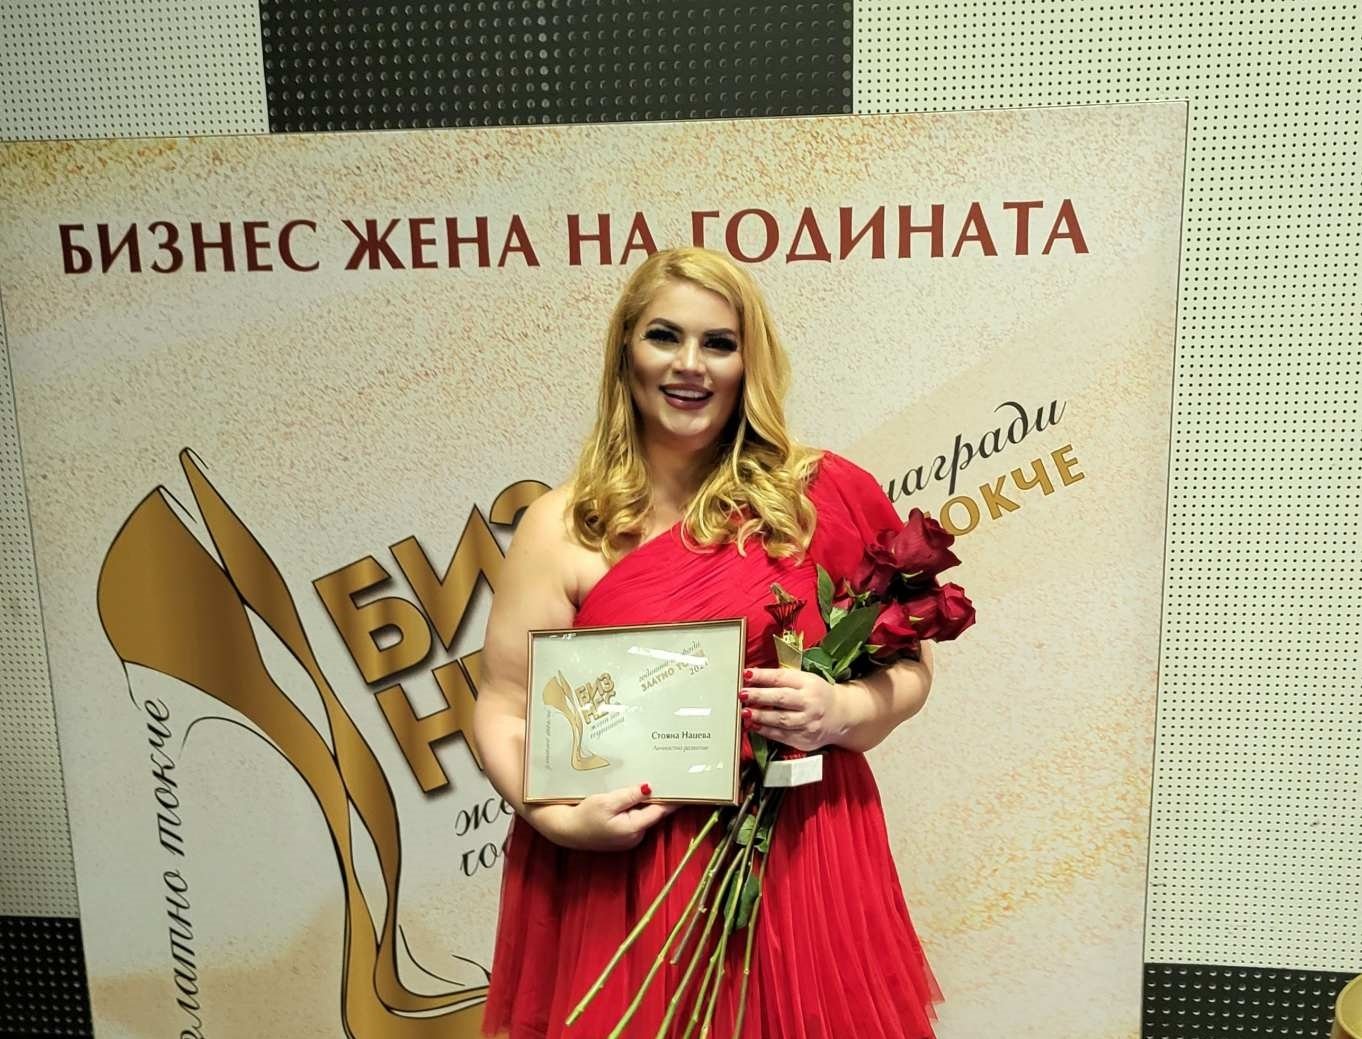 Основателката на Академия Щастлив живот Стояна Нацева получи голямата годишна